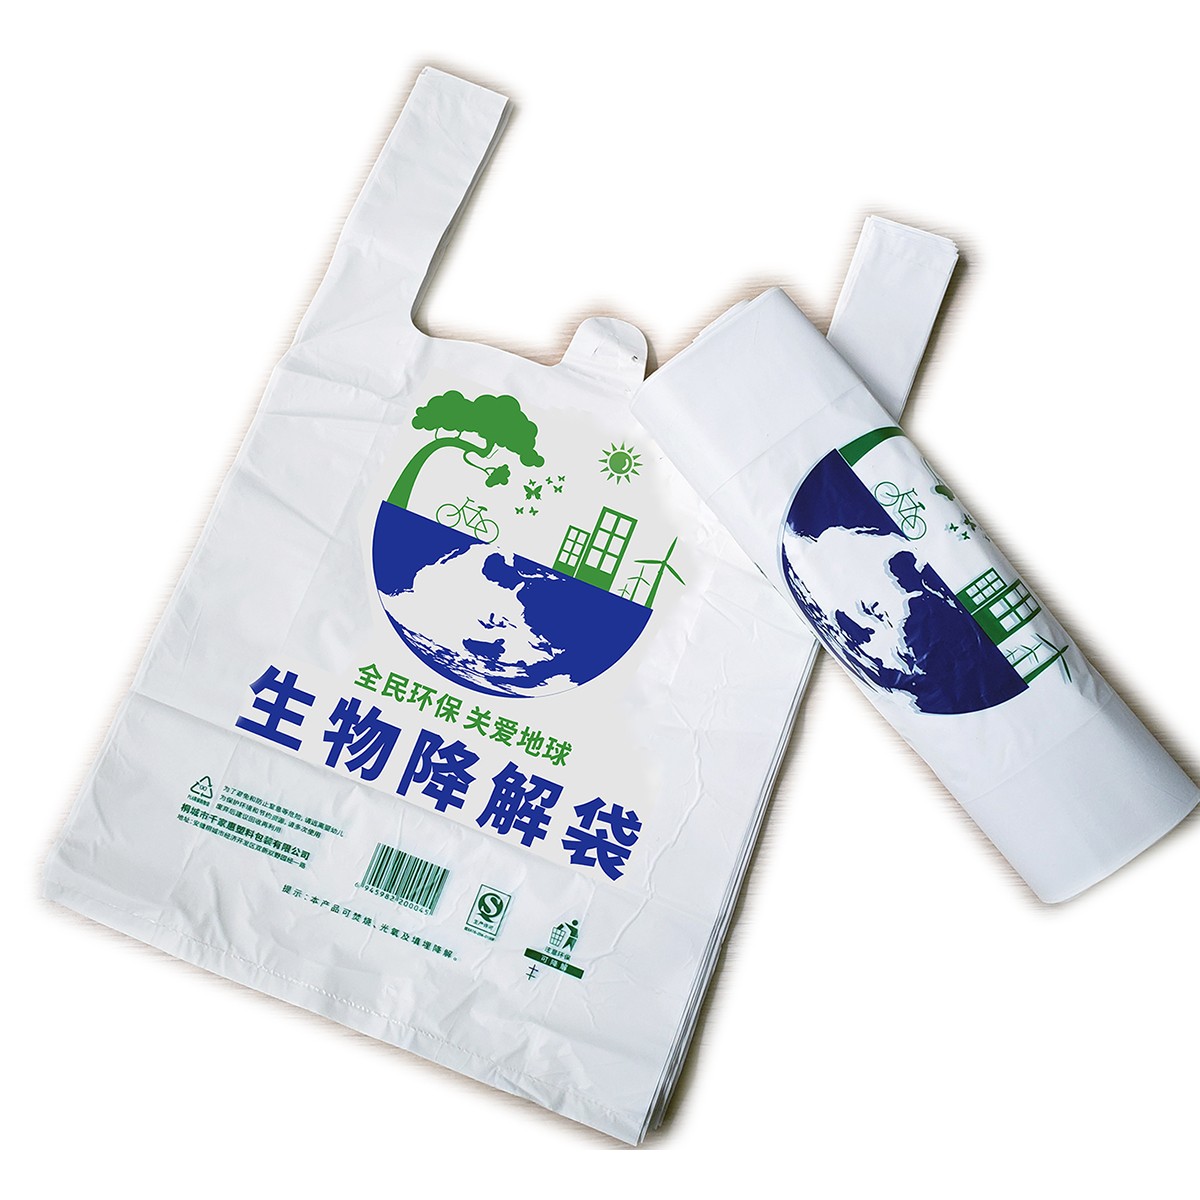 可降解塑料袋 外卖打包袋 环保卫生 可定制logo文字 厂家直销 量大价优